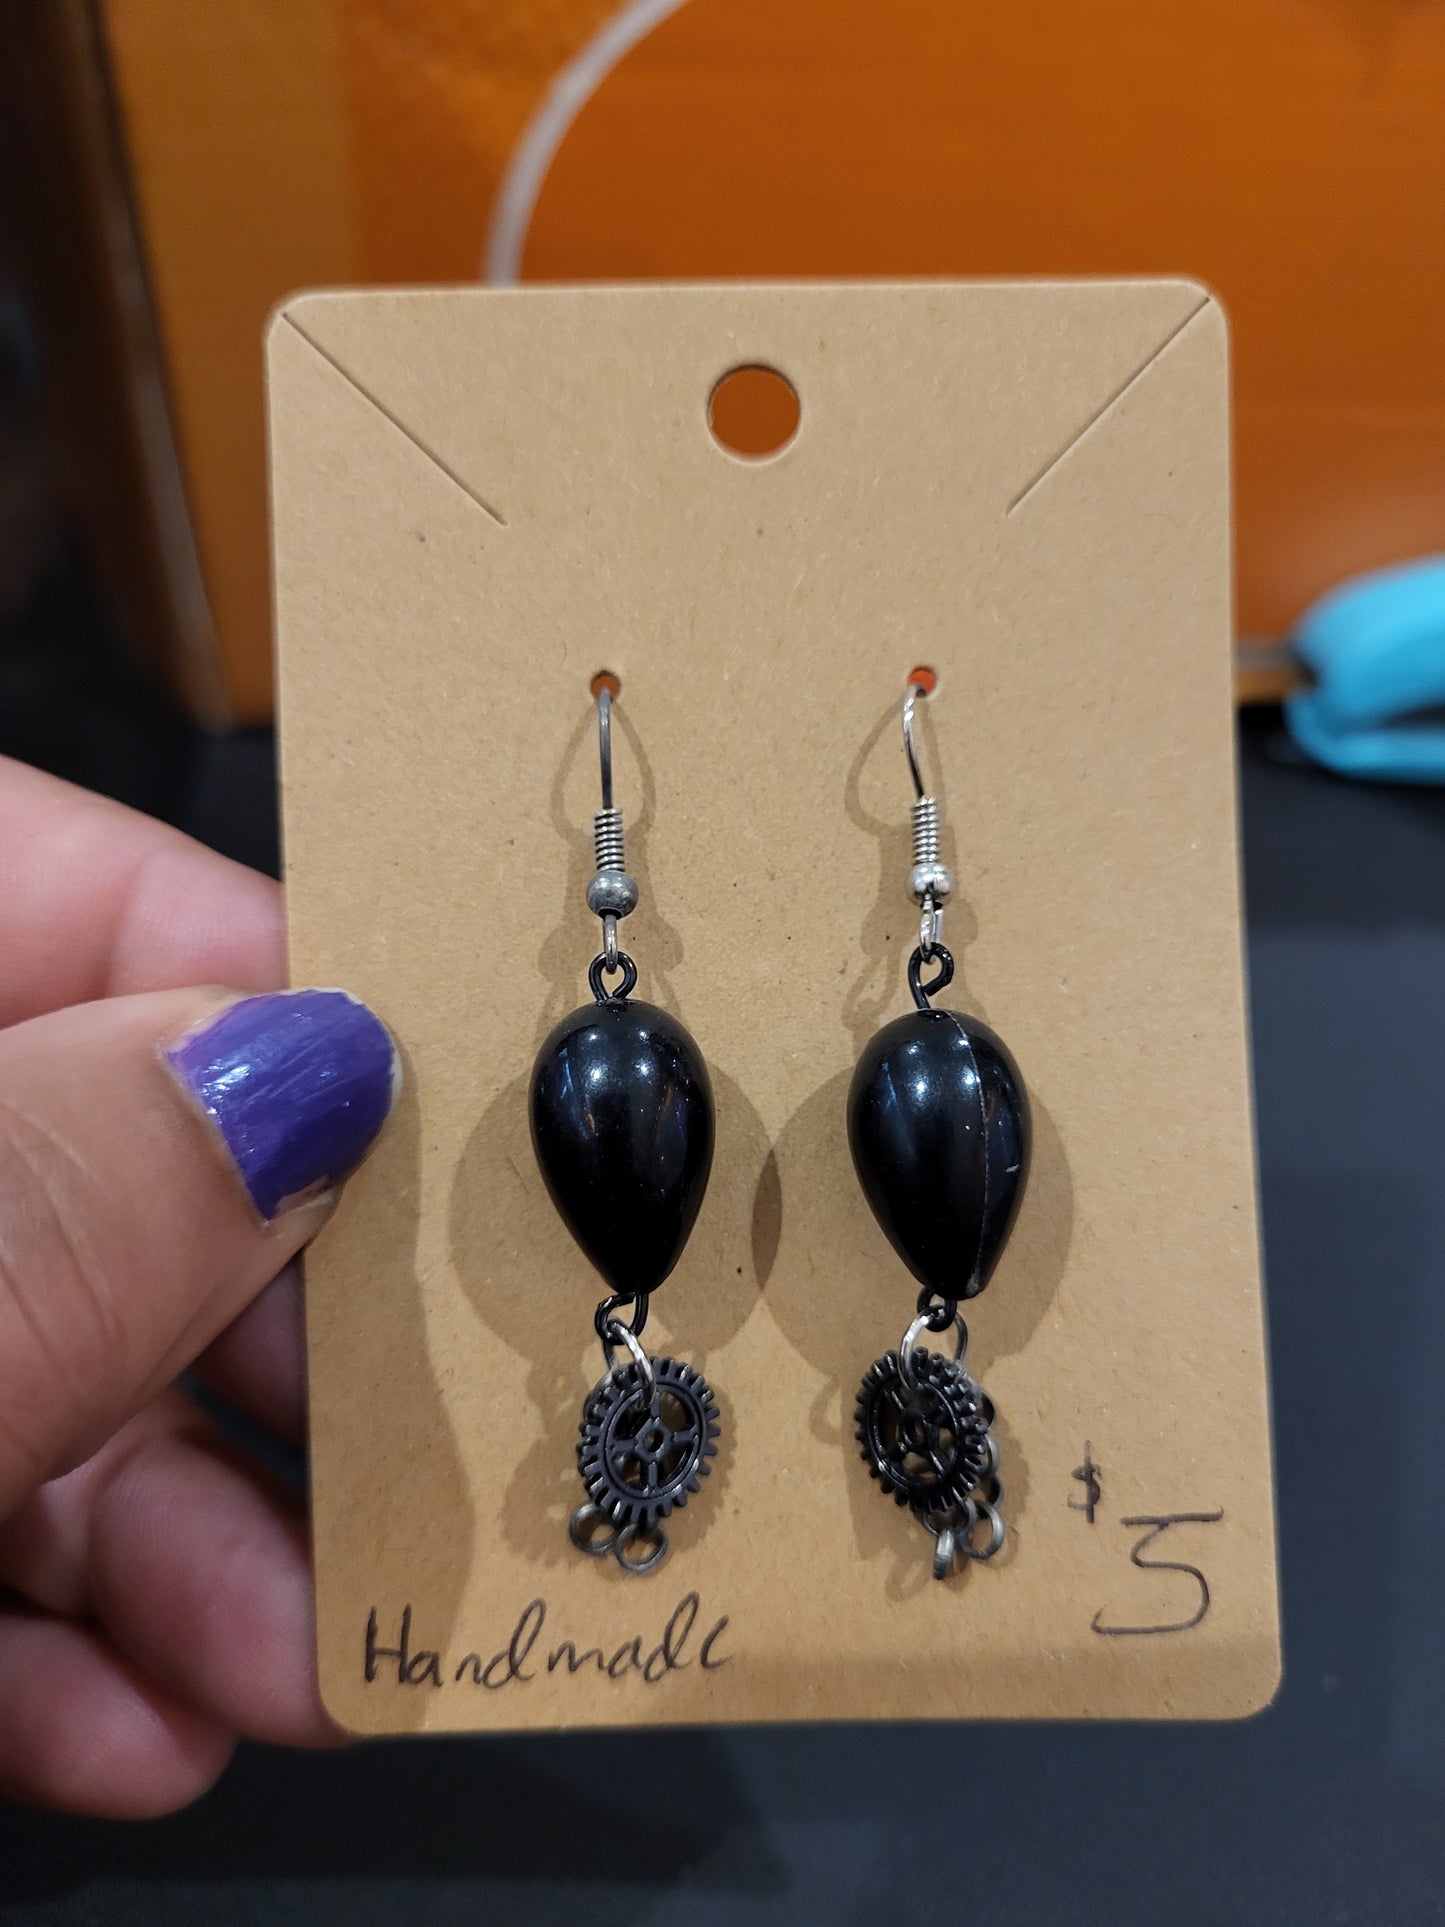 Handmade black teardrop bead earrings with gear